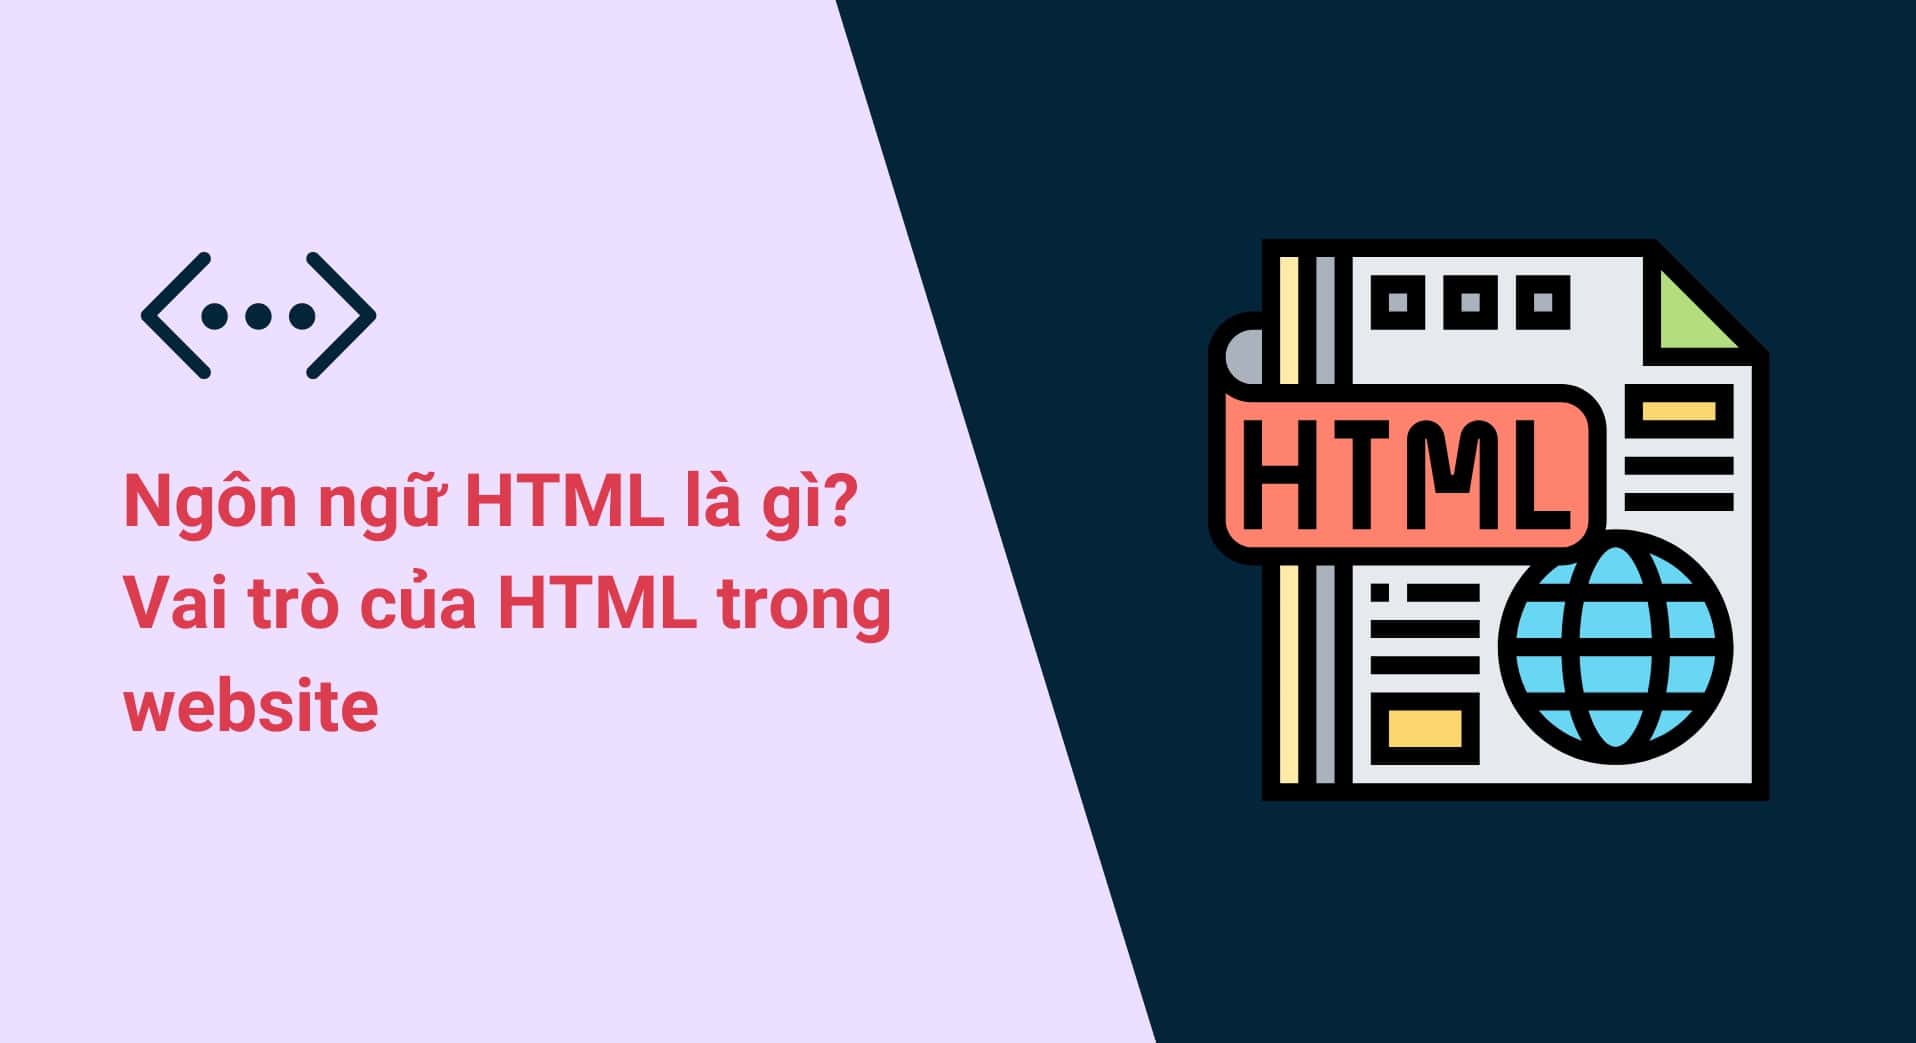 HTML là gì? Tầm quan trọng của HTML trong lập trình website